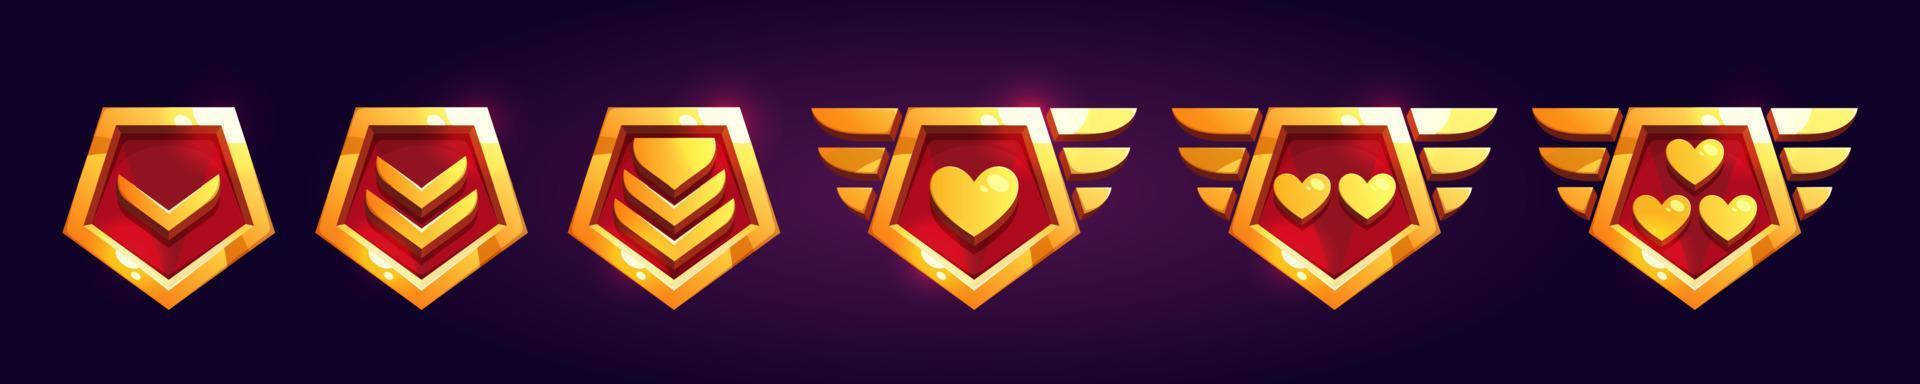 conjunto de juego rango insignias con corazones vector